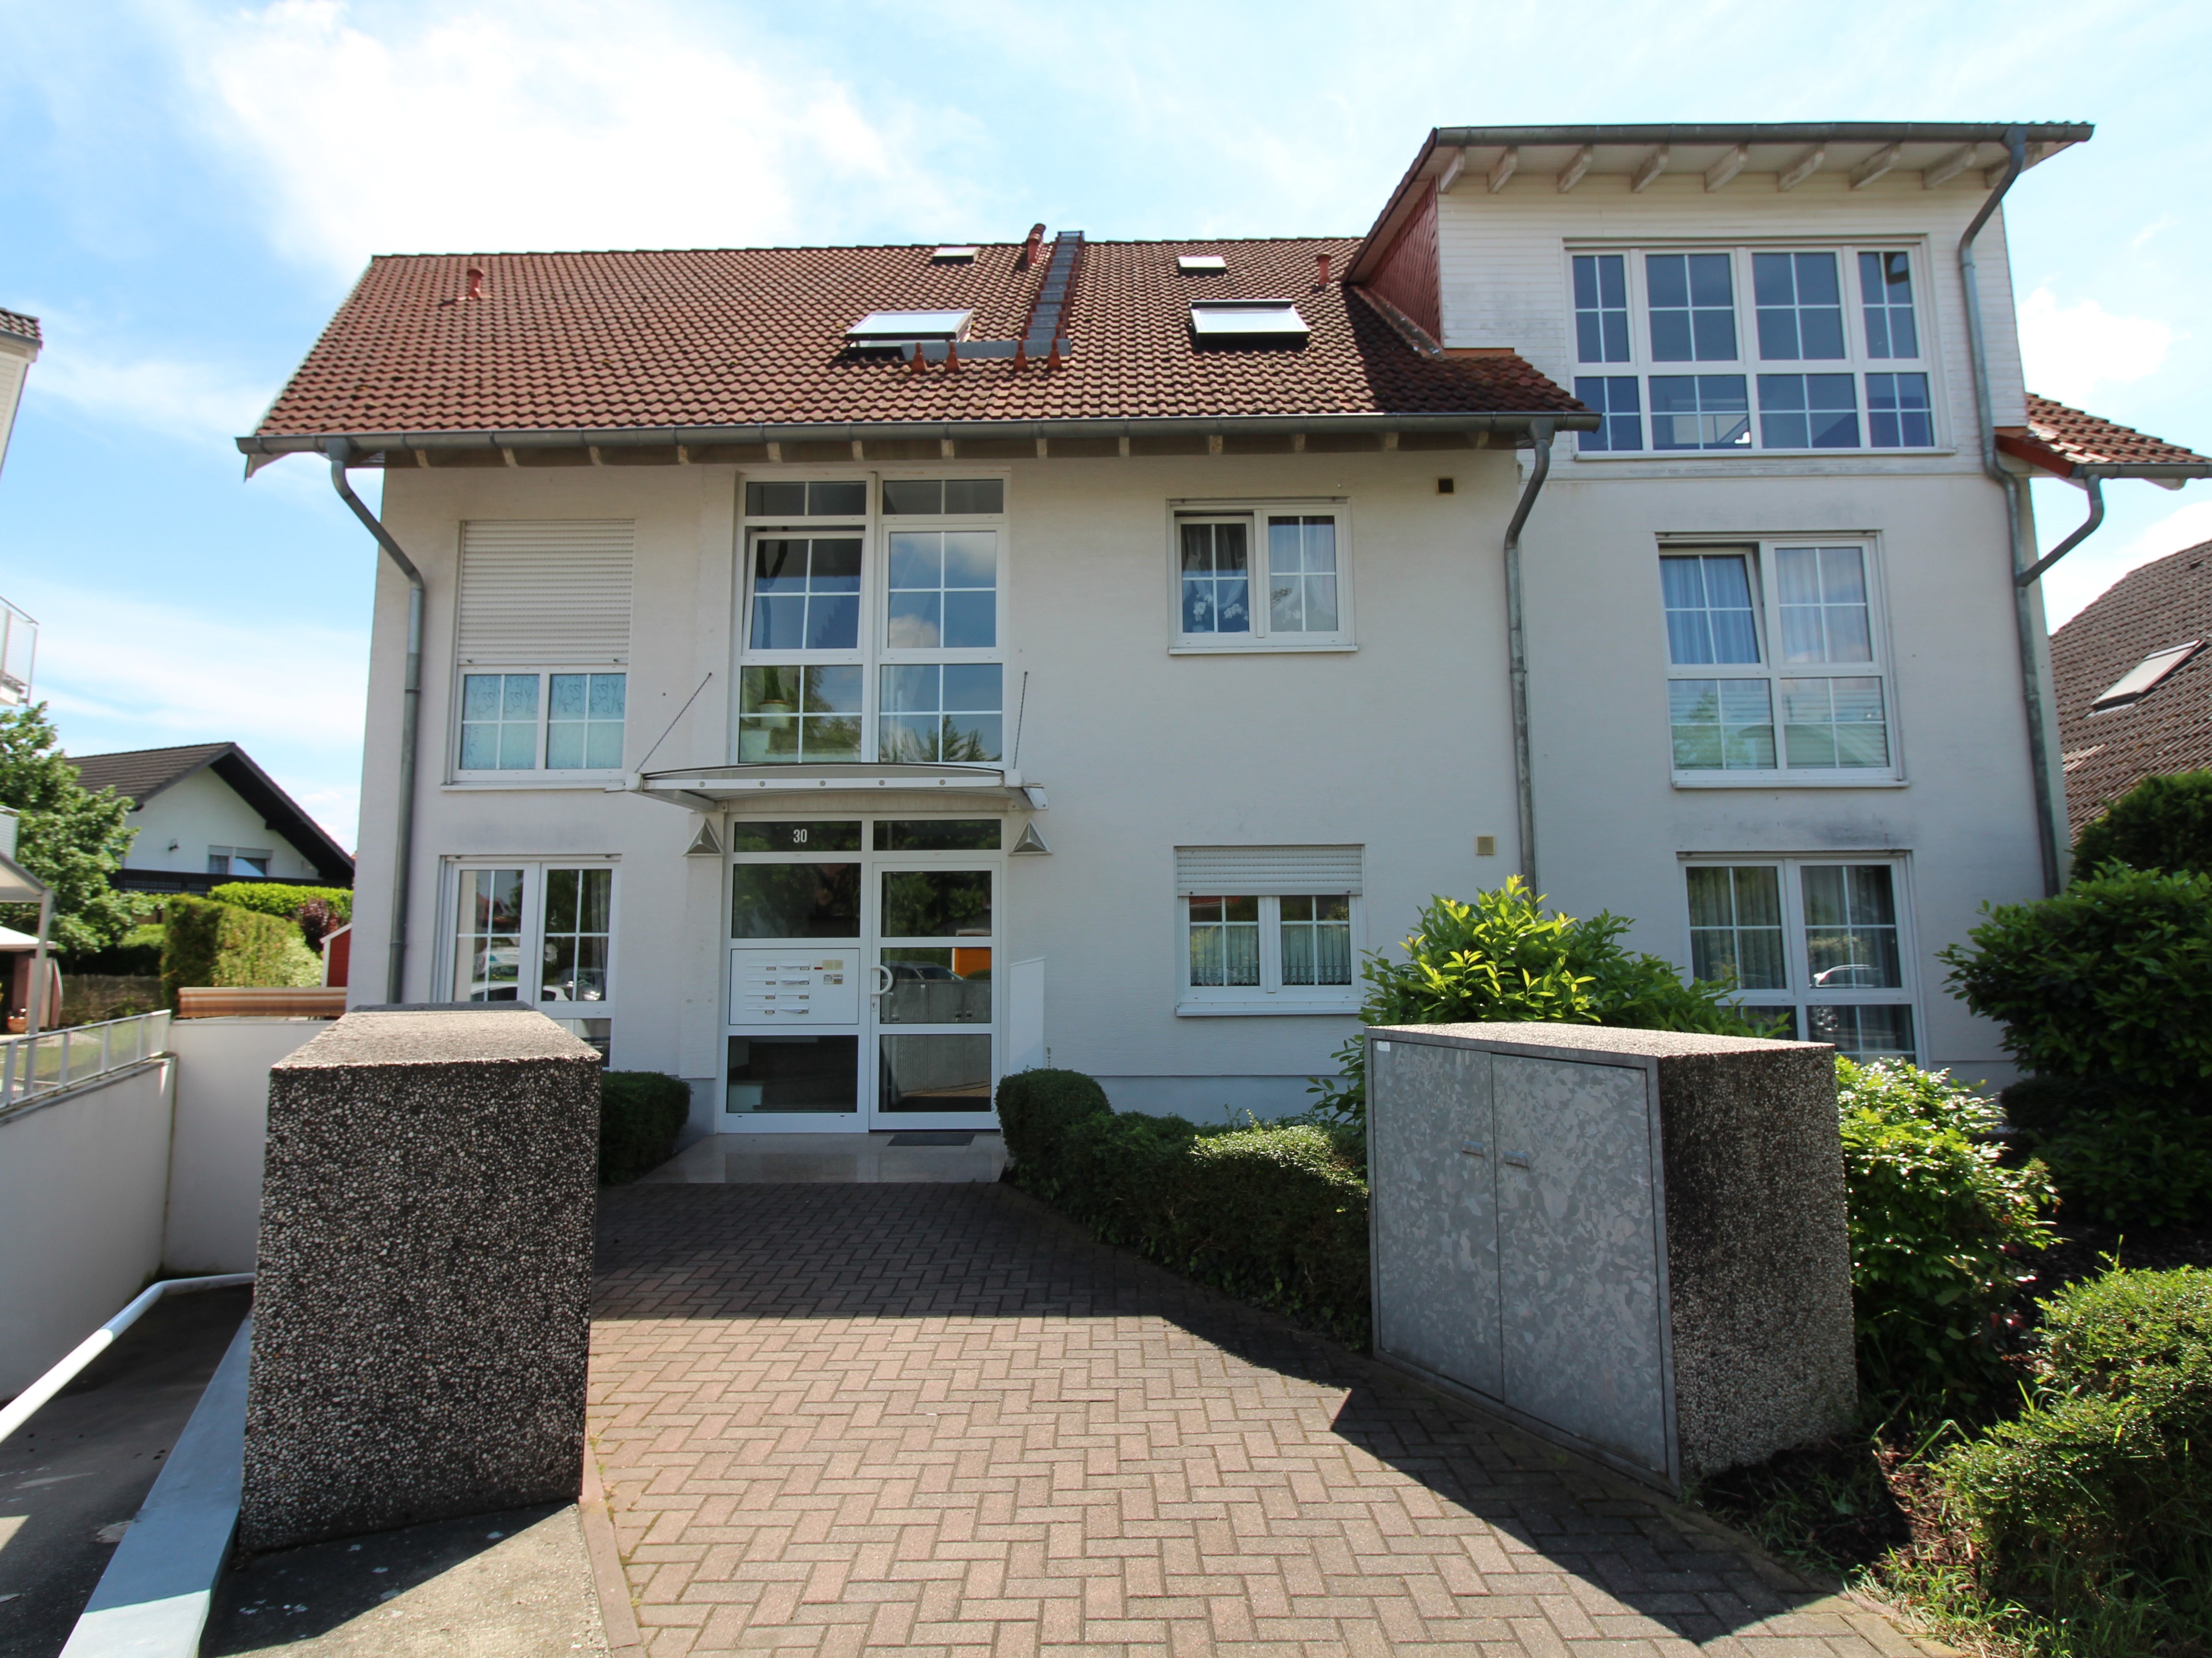 Objekt 704: 2-Zimmer-Wohnung mit Balkon im 1. Obergeschoss eines kleinen Mehrfamilienhauses in Gernsheim